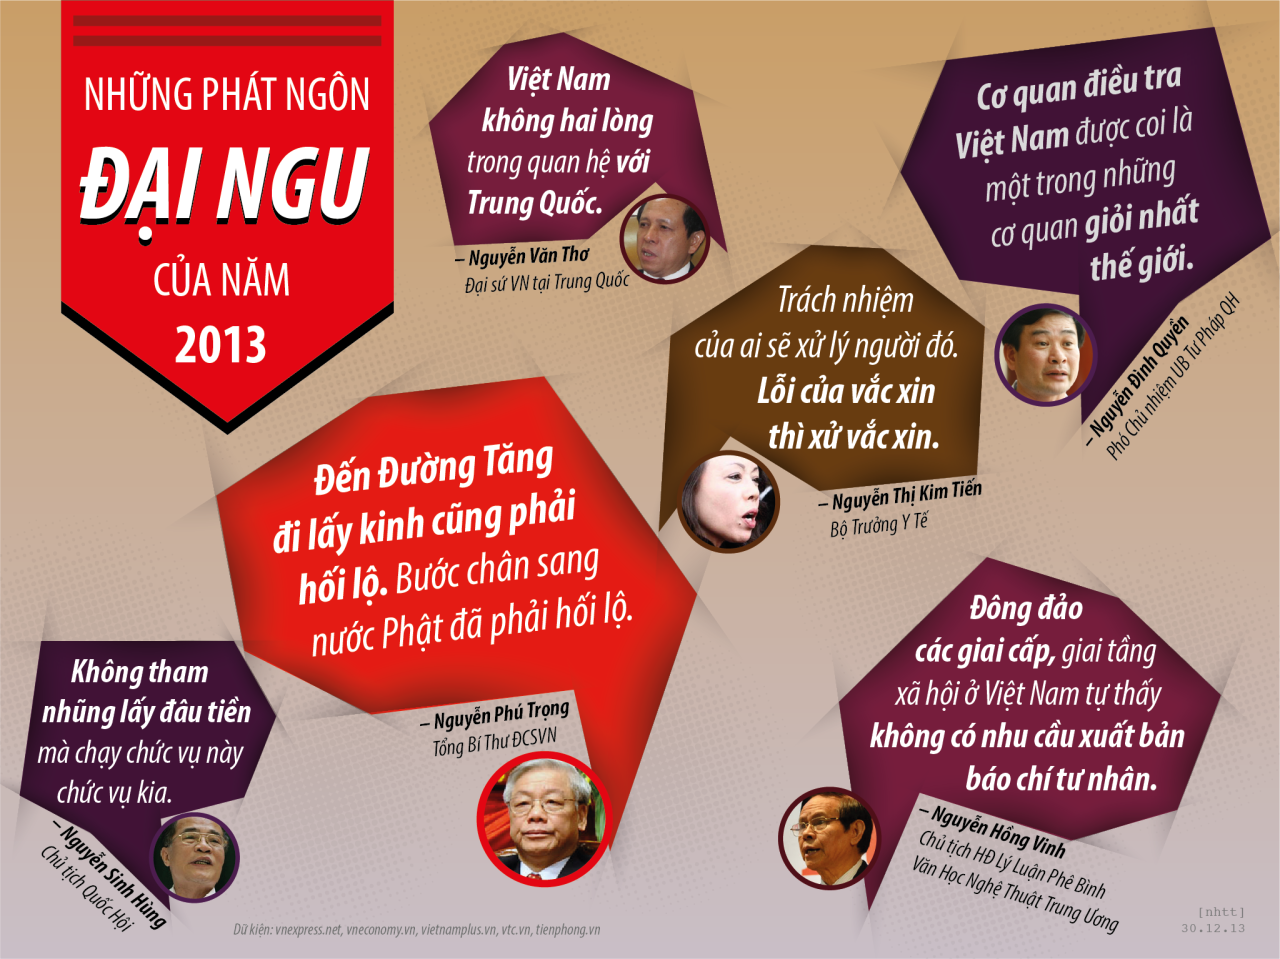 Những phát ngôn ĐẠI NGU của năm 2013.